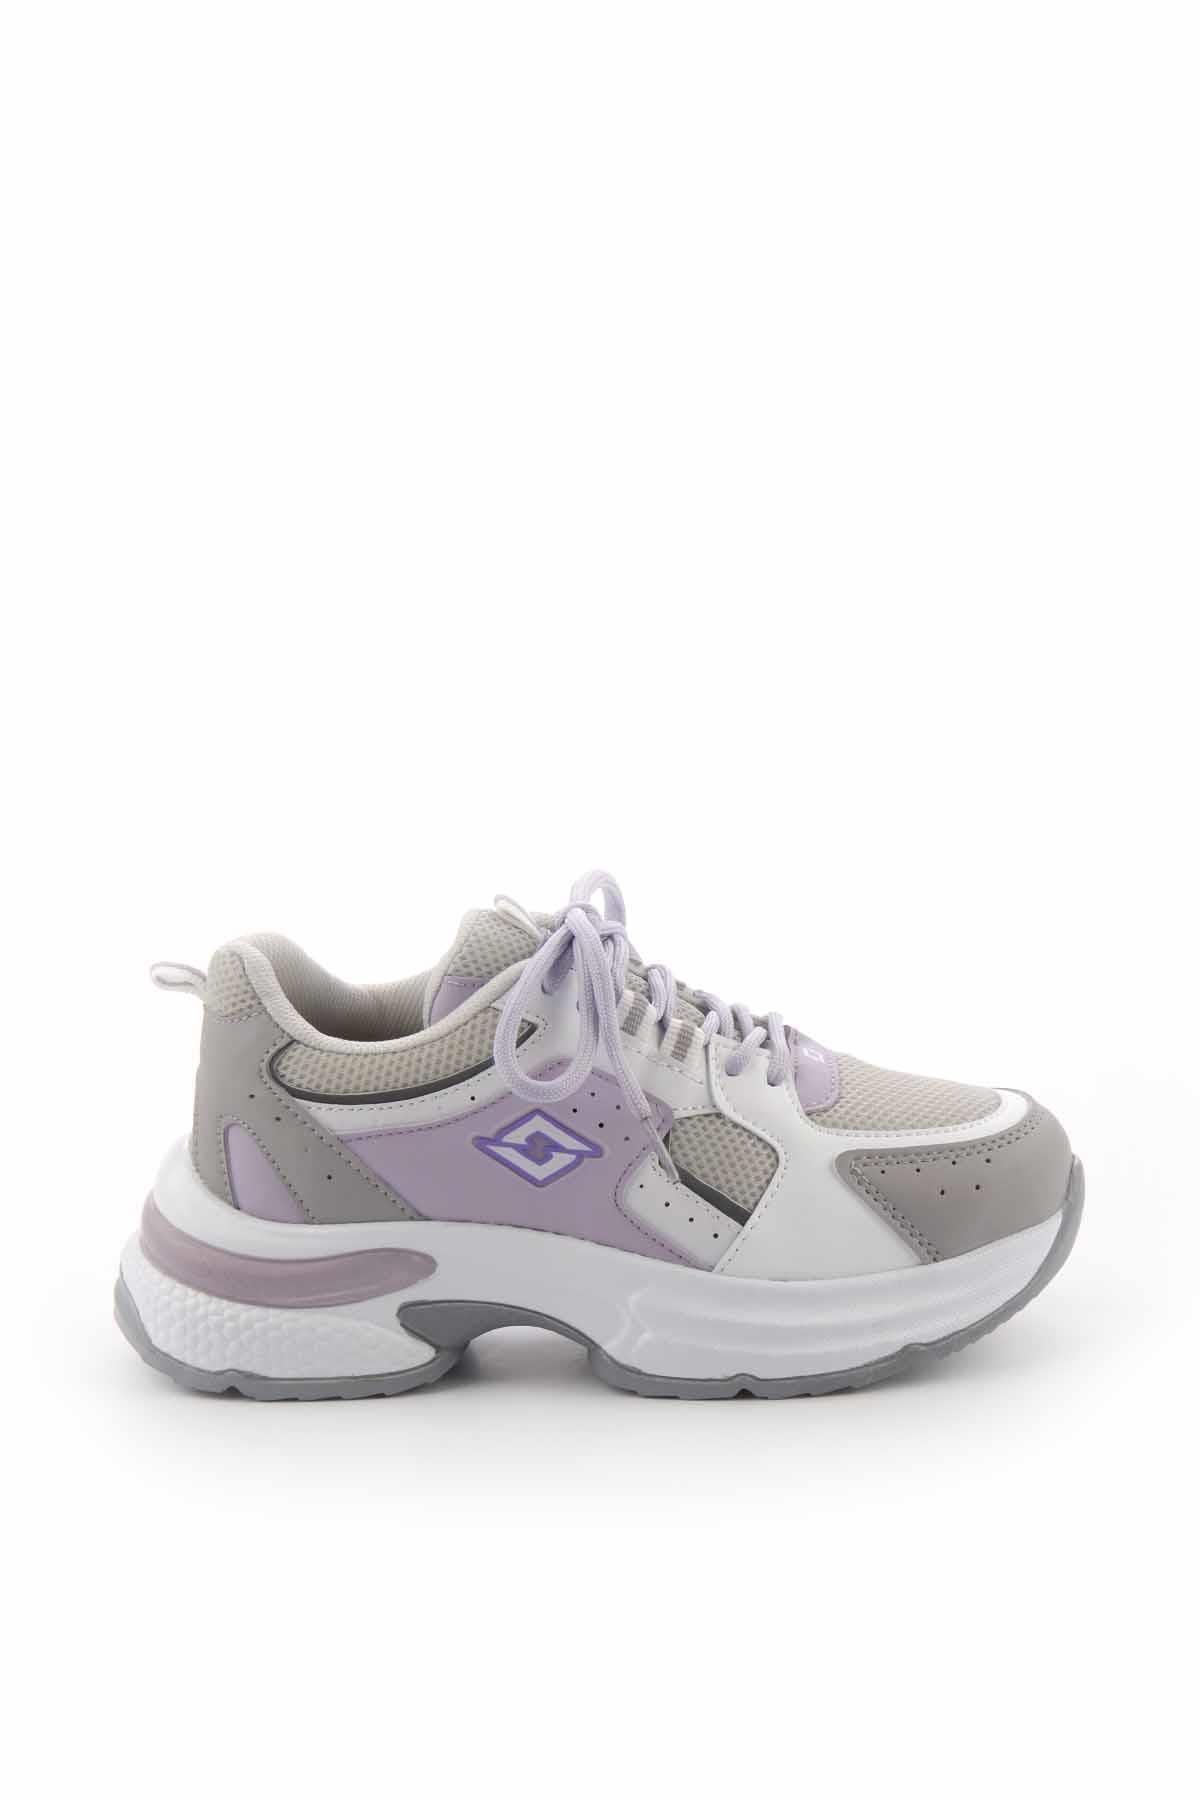 SOLAZER Sneaker Kadın Günlük Spor Ayakkabı Slz0002